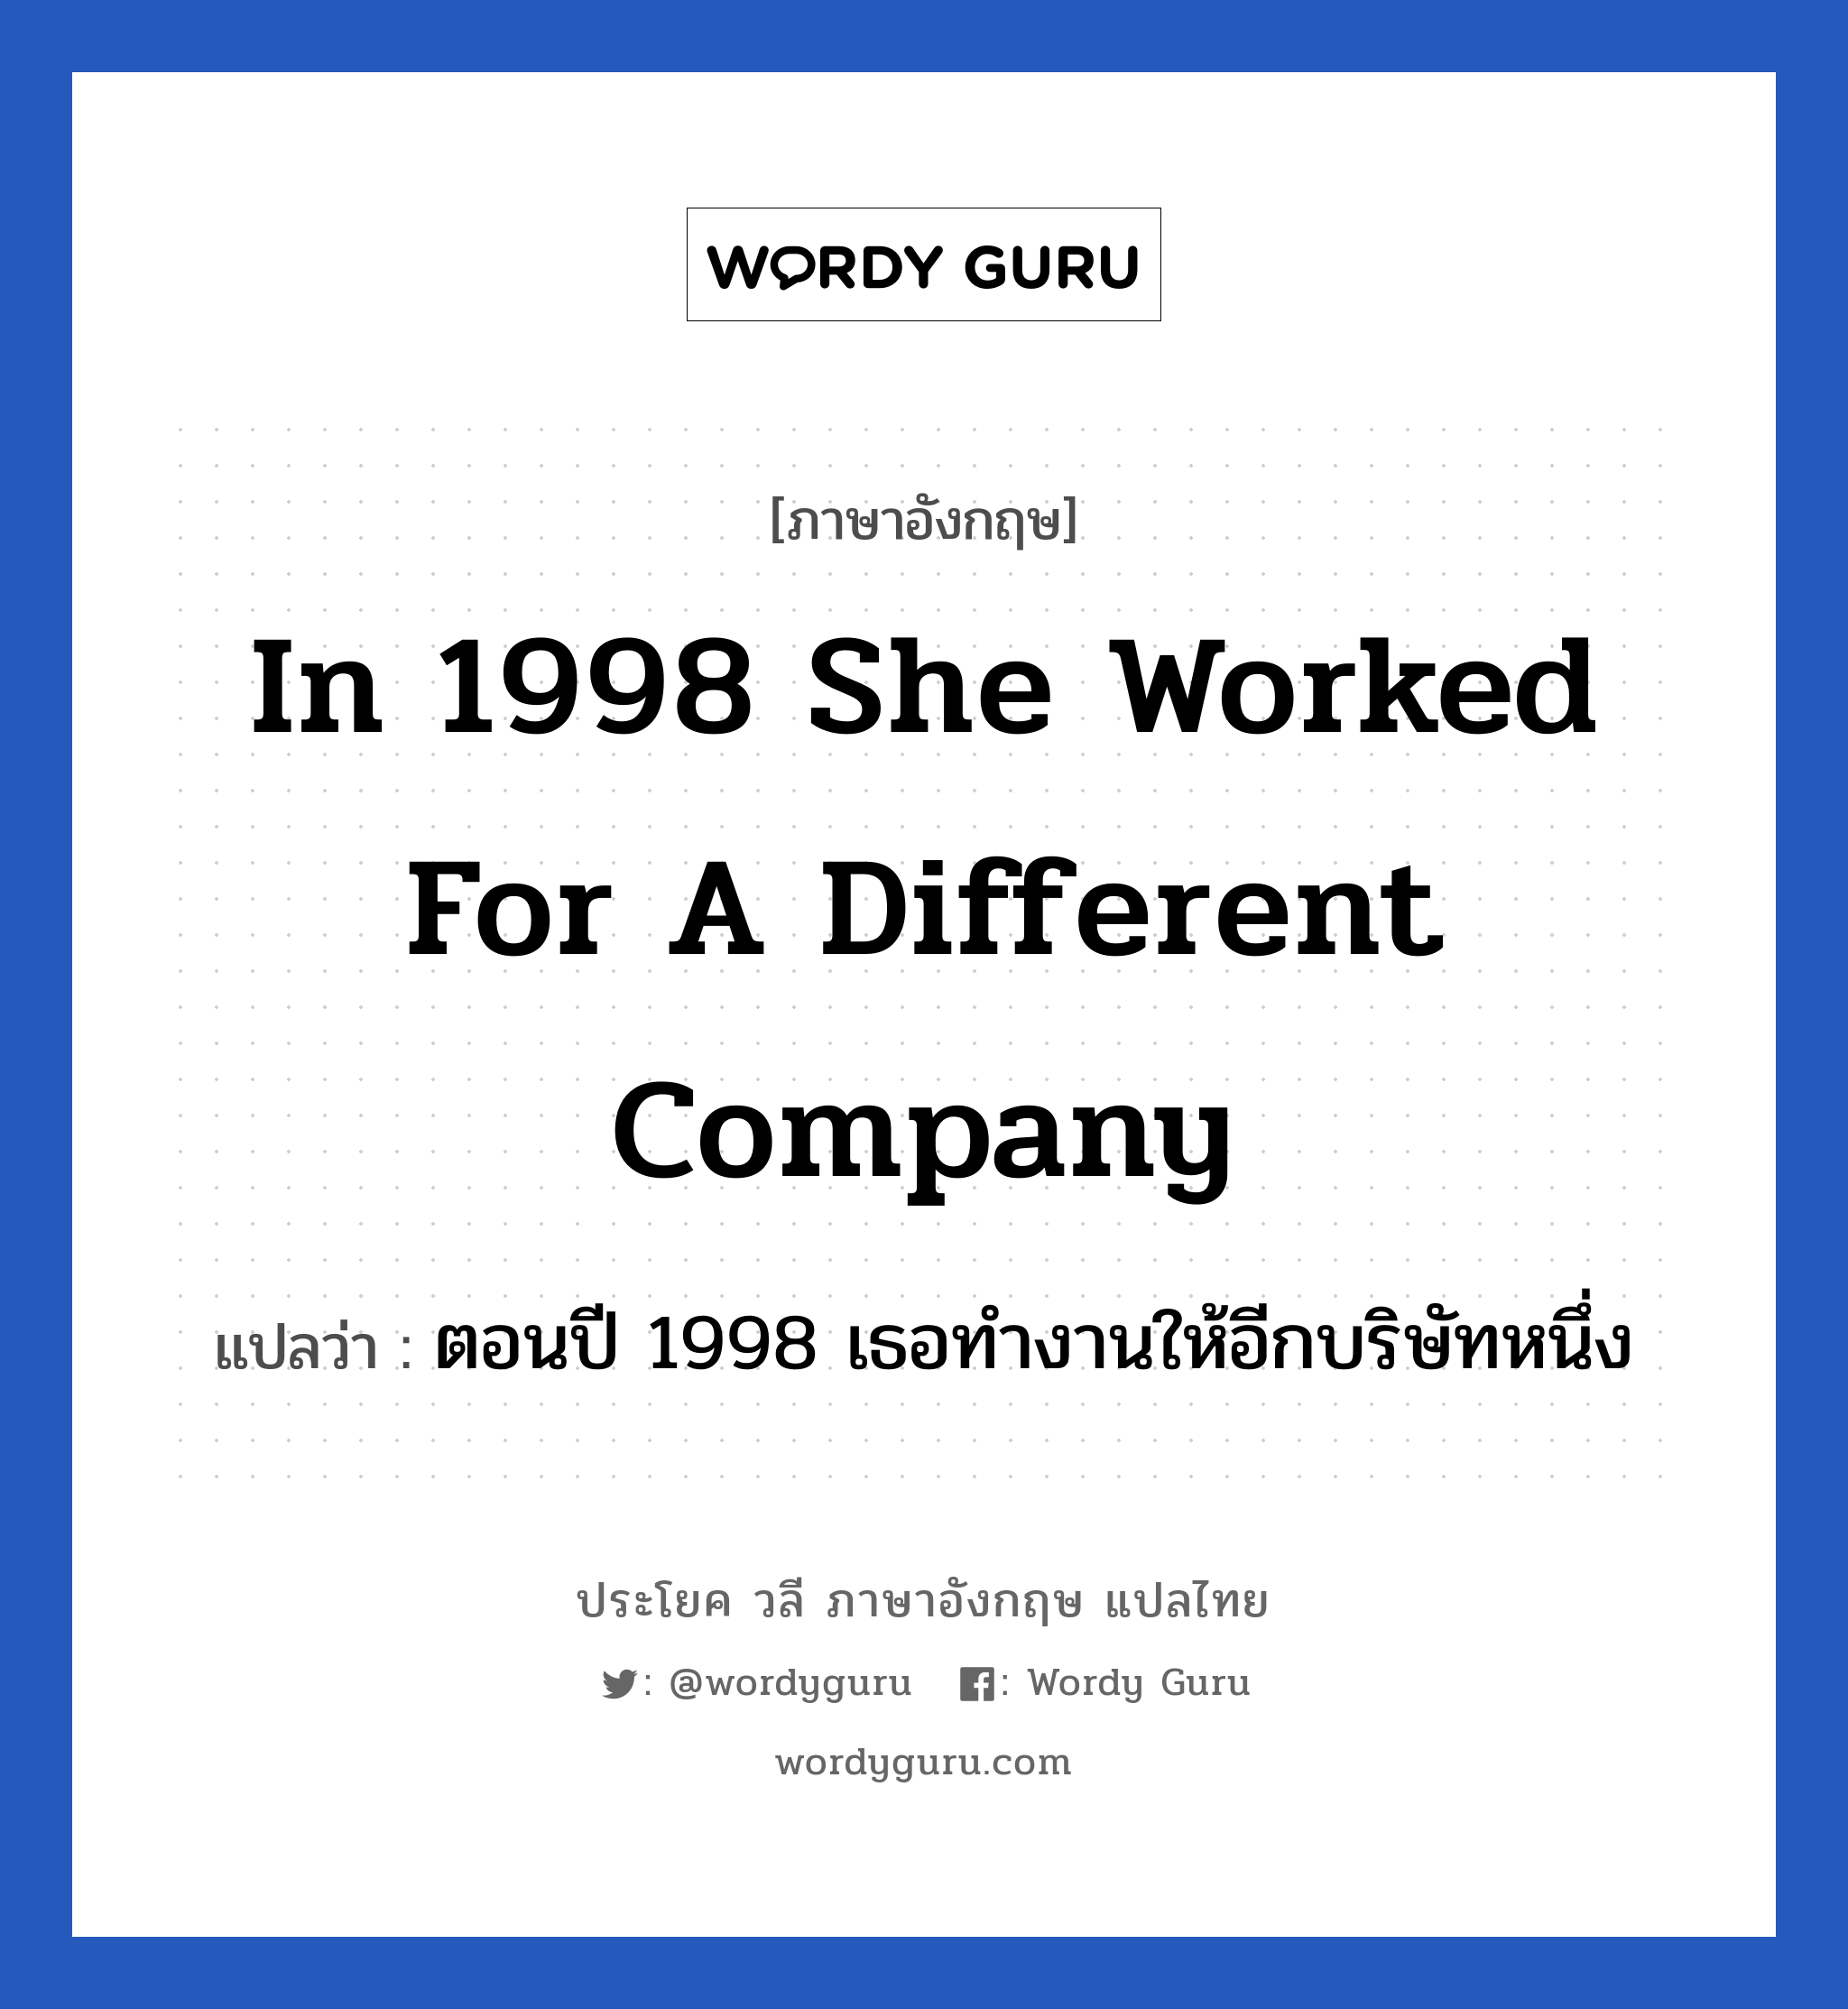 ตอนปี 1998 เธอทำงานให้อีกบริษัทหนึ่ง ภาษาอังกฤษ?, วลีภาษาอังกฤษ ตอนปี 1998 เธอทำงานให้อีกบริษัทหนึ่ง แปลว่า In 1998 she worked for a different company หมวด ในที่ทำงาน